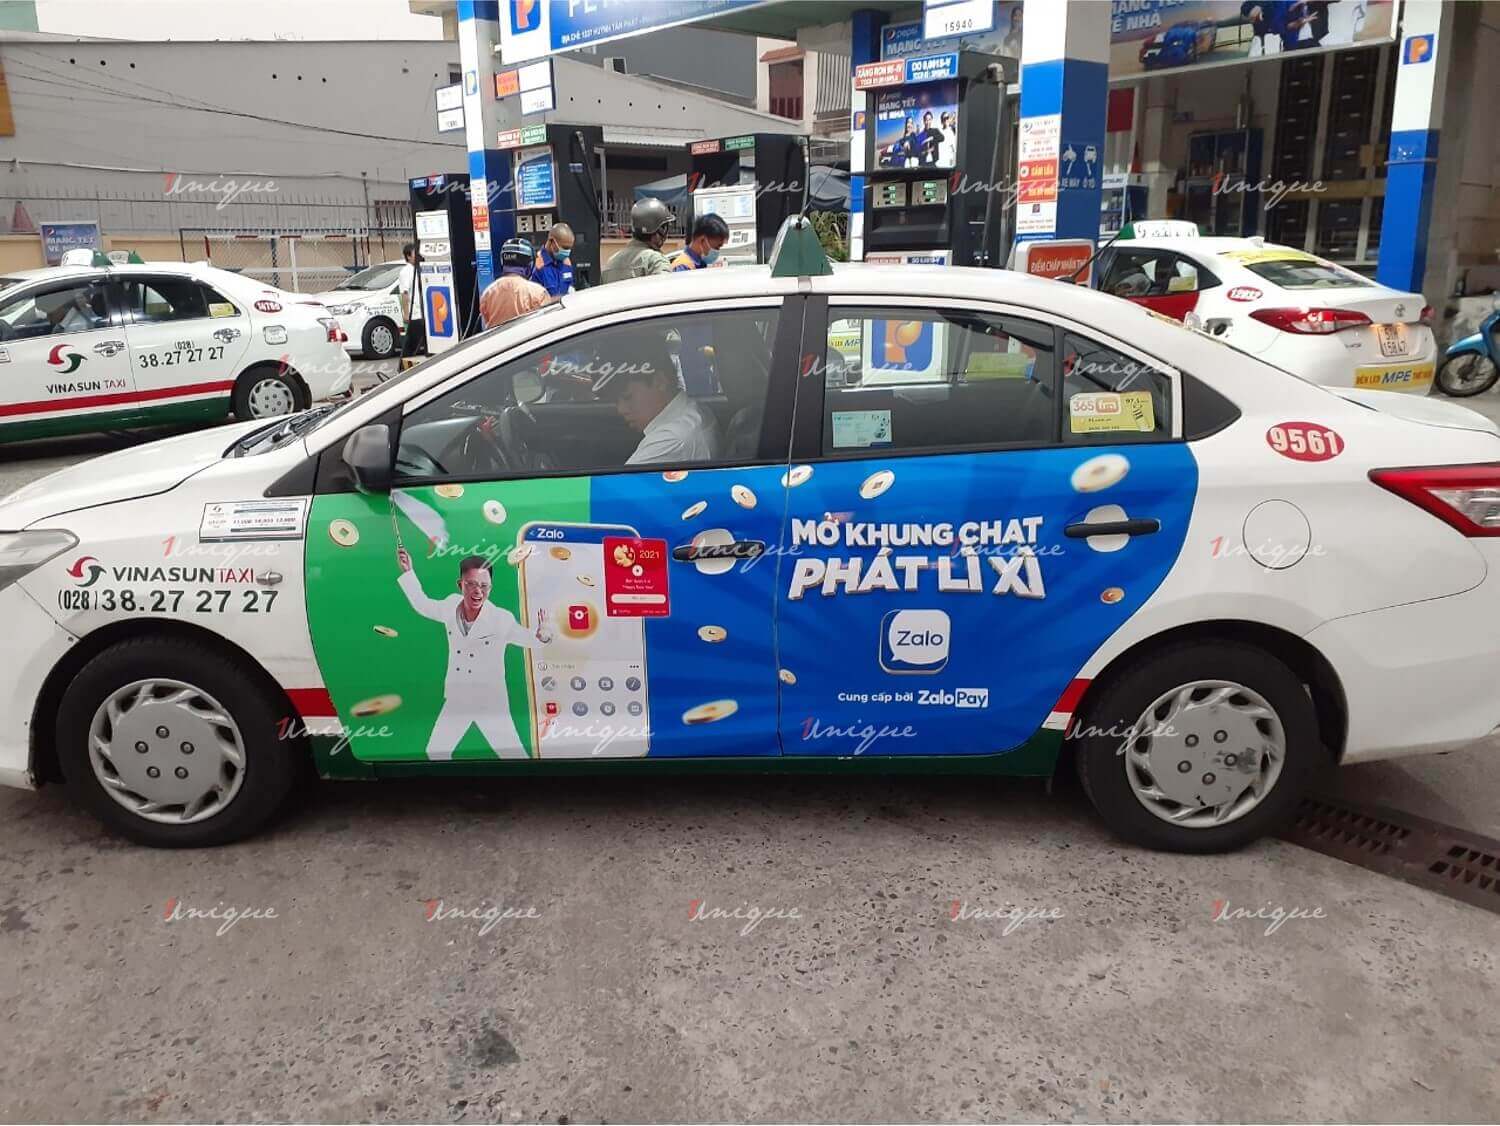 Chiến dịch quảng cáo trên xe taxi của ZaloPay dịp Tết 2021